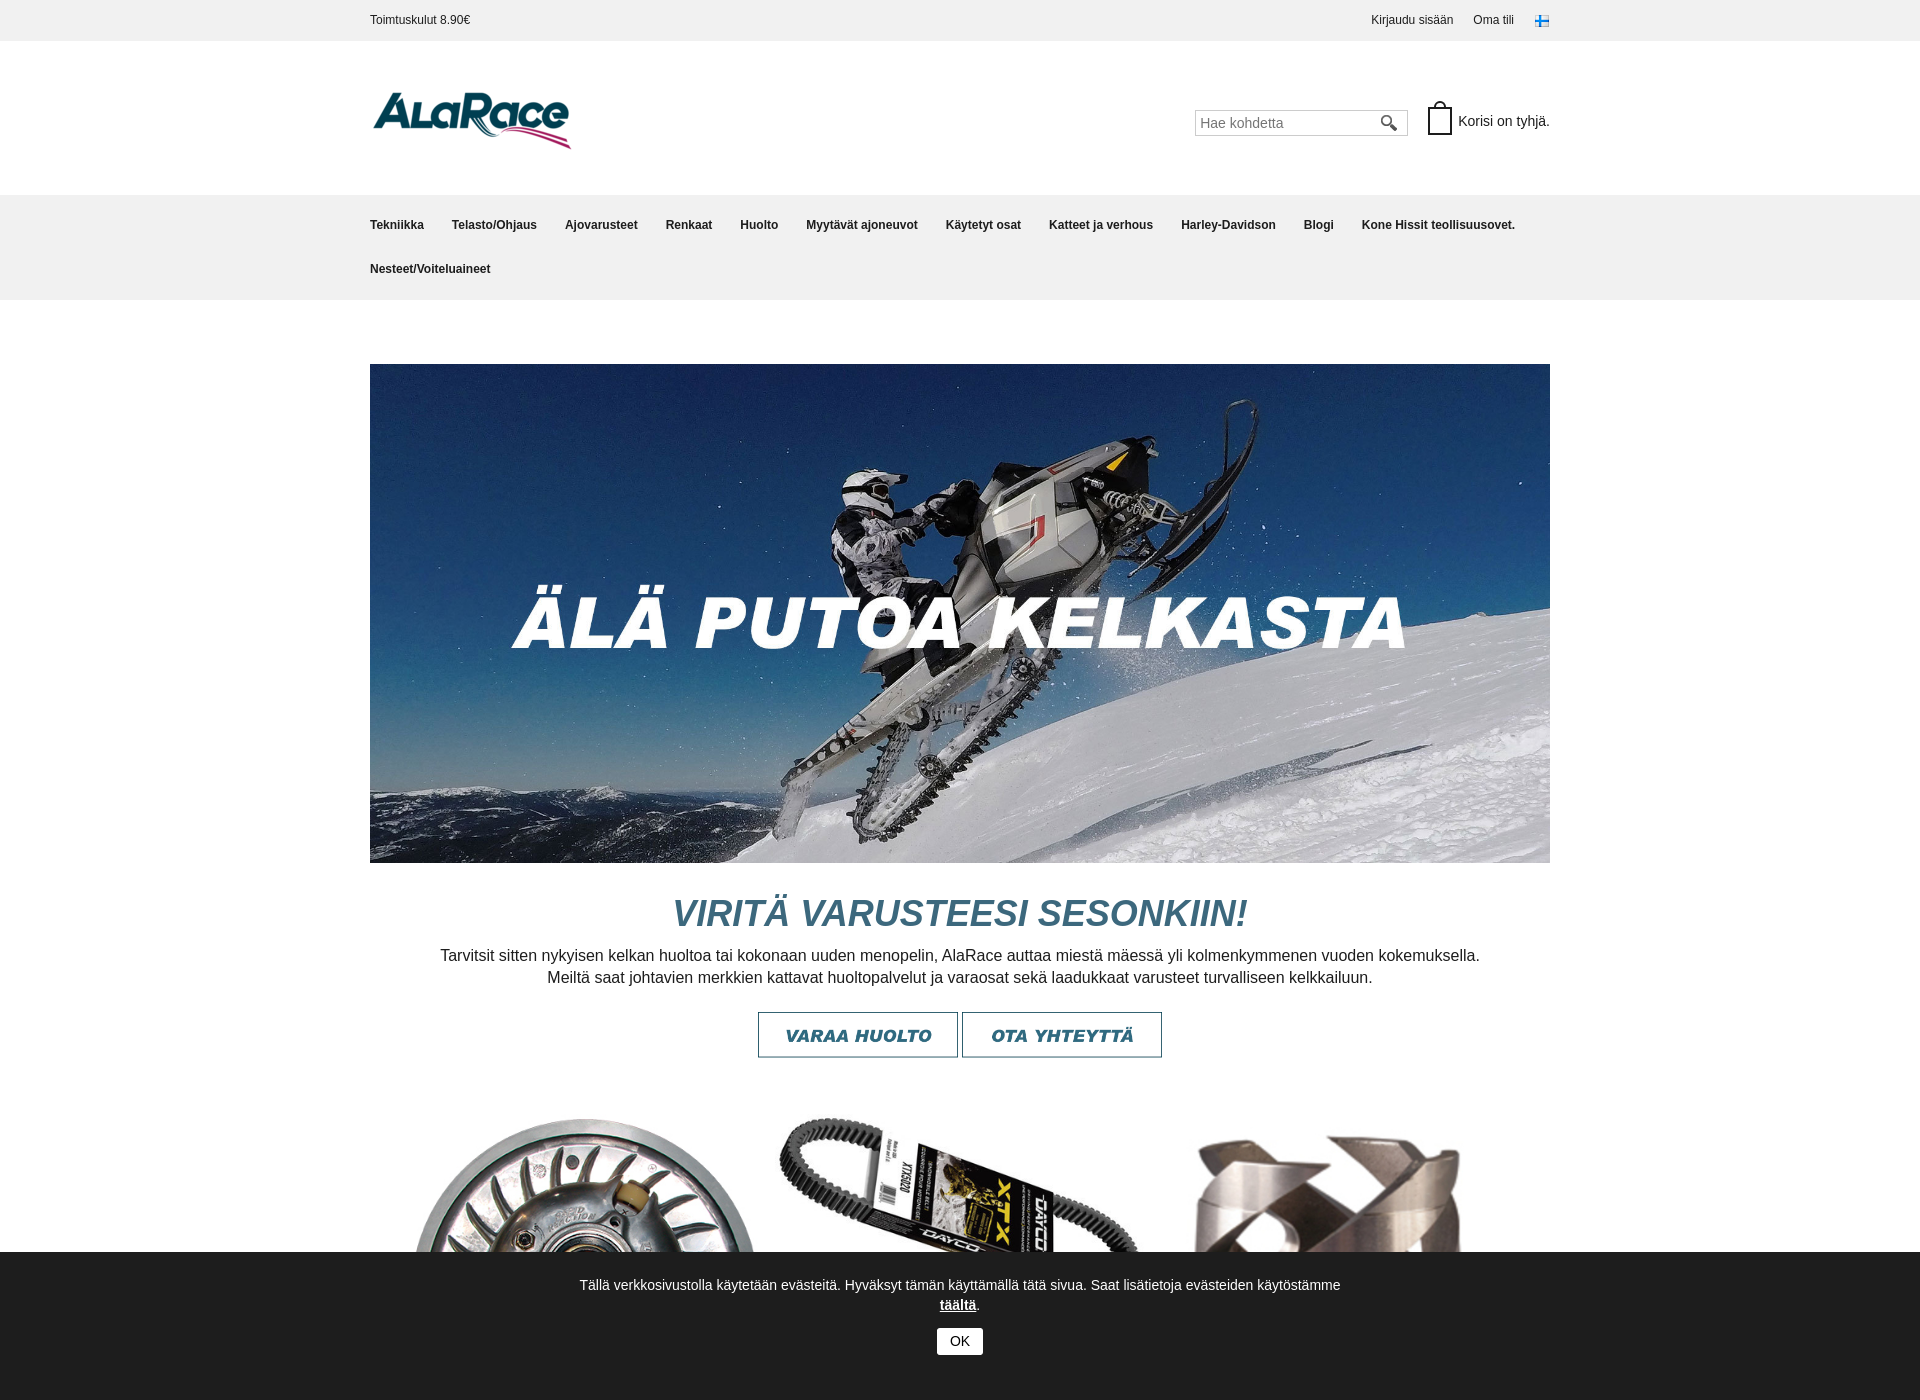 Näyttökuva alarace.fi